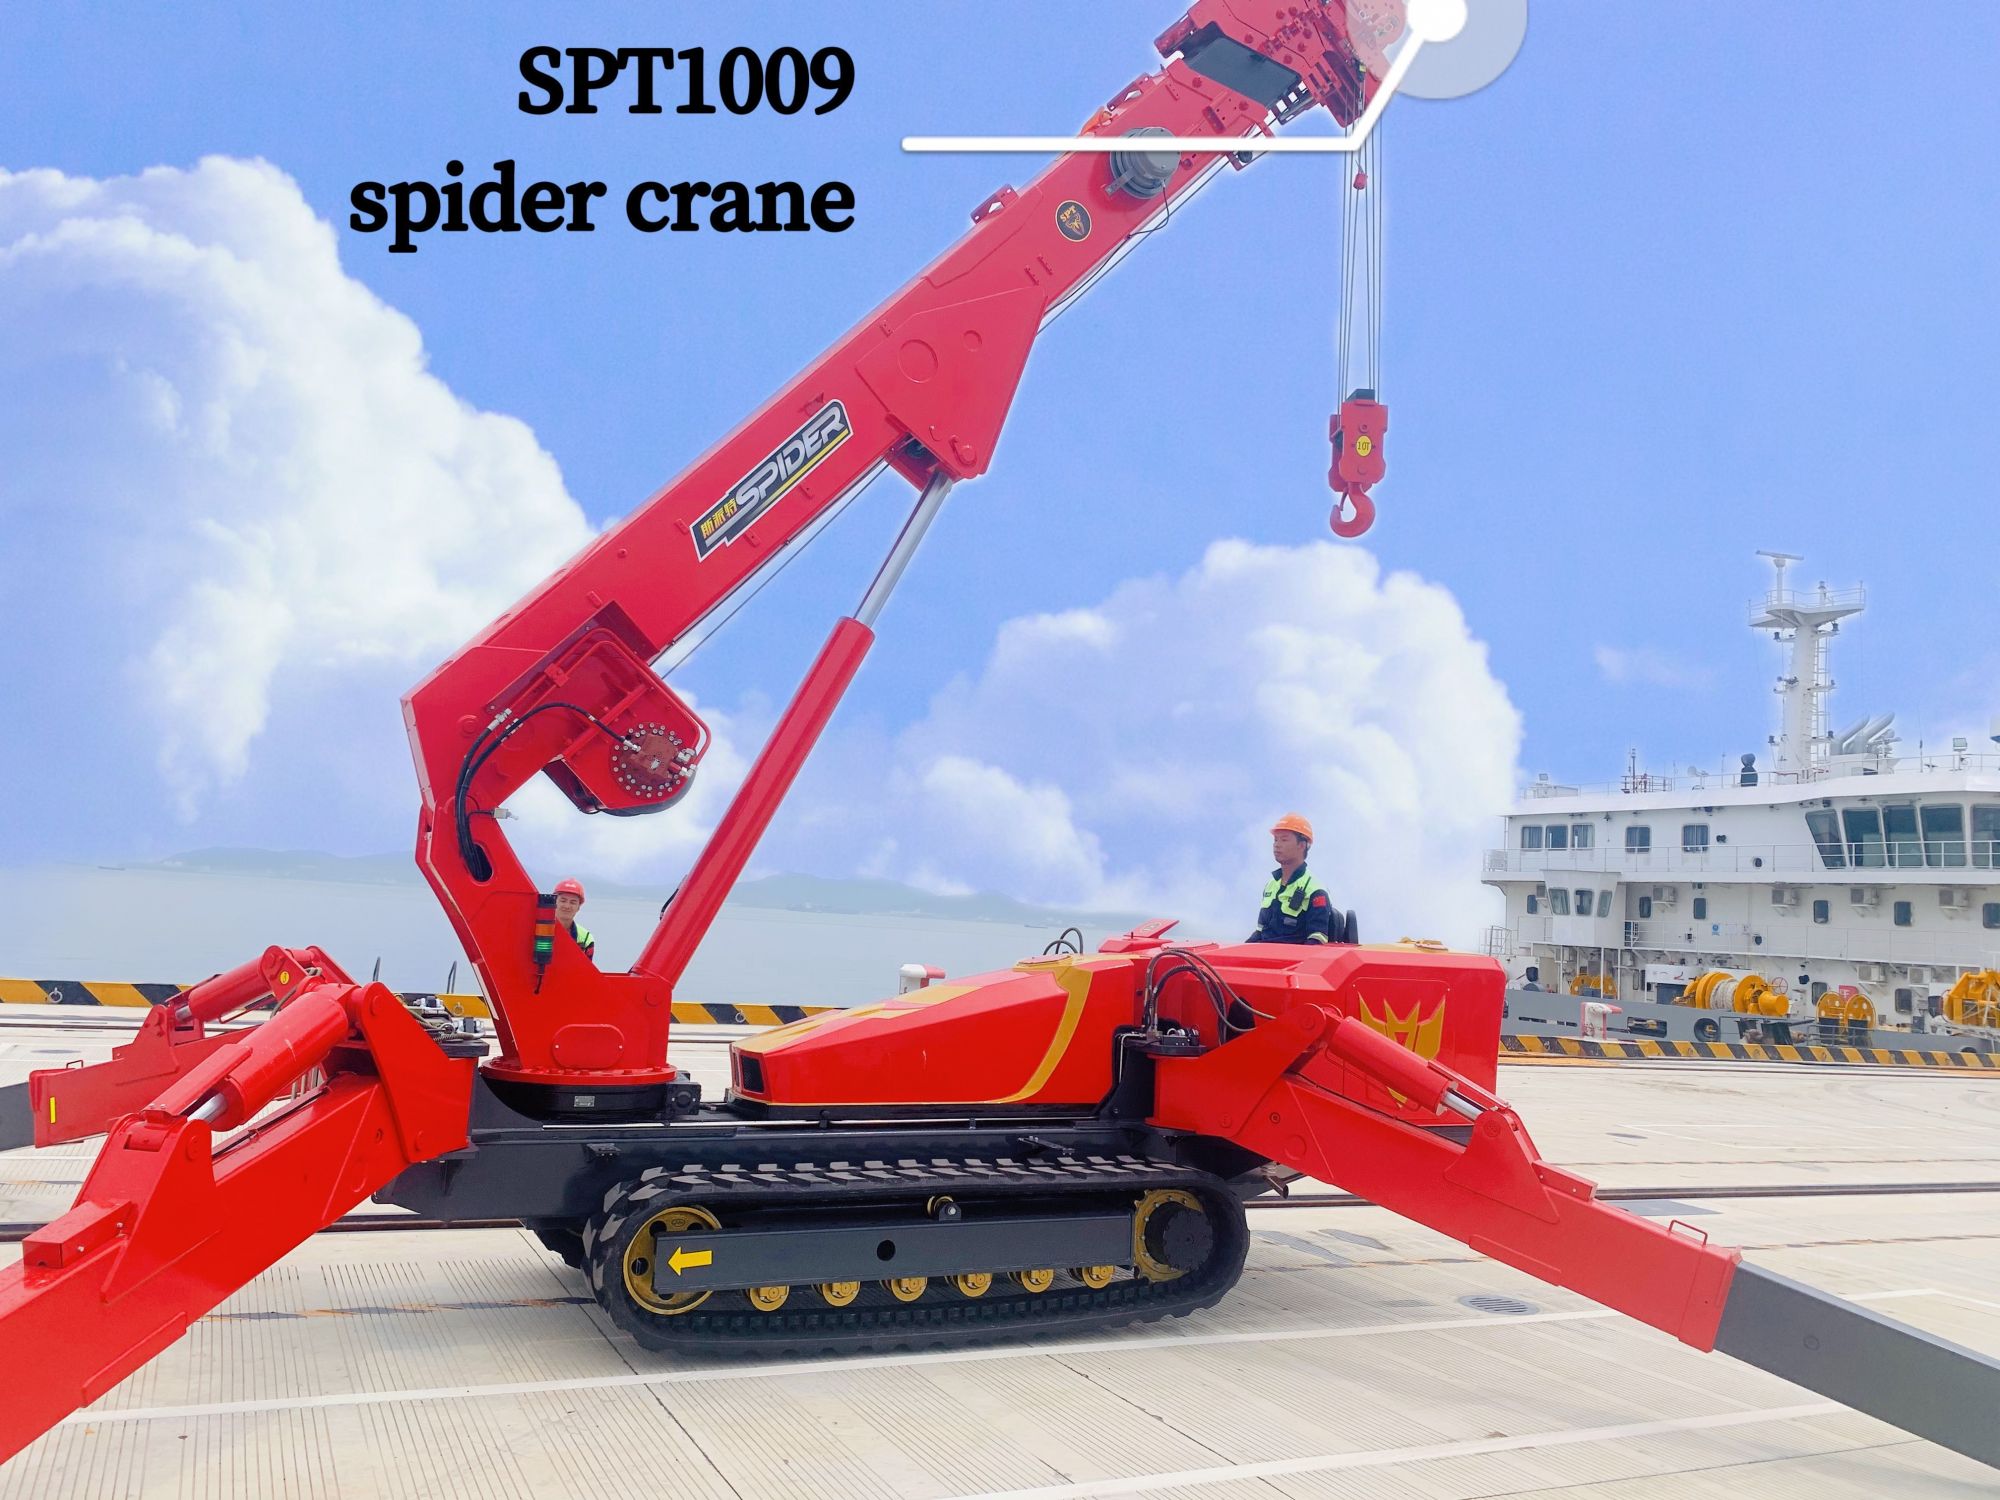 spt1009 spider crane